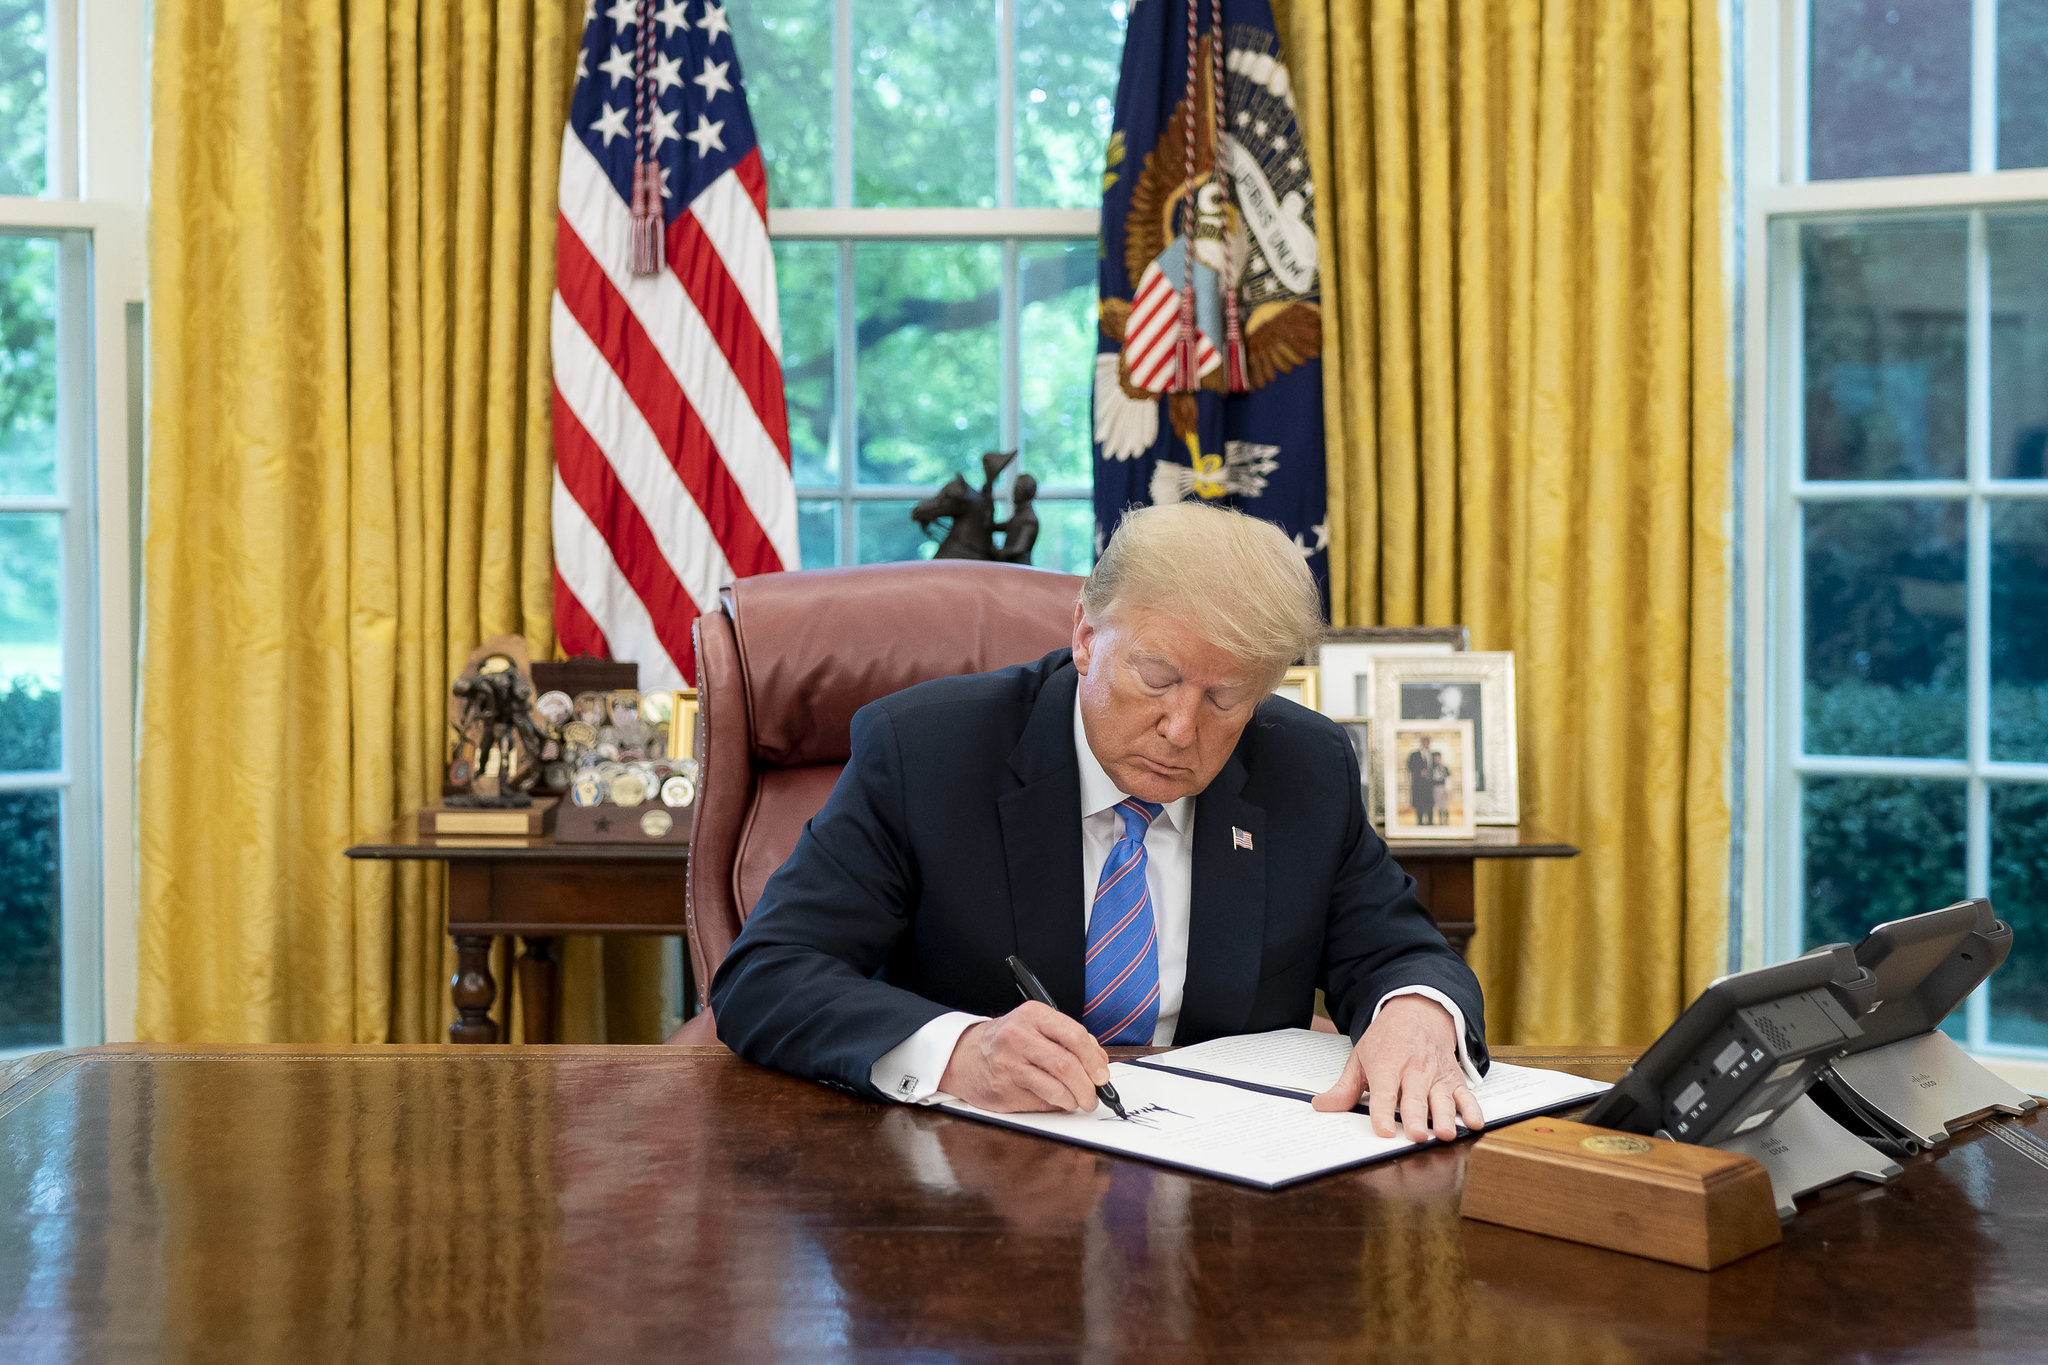 Trump signs June 2020 executive order